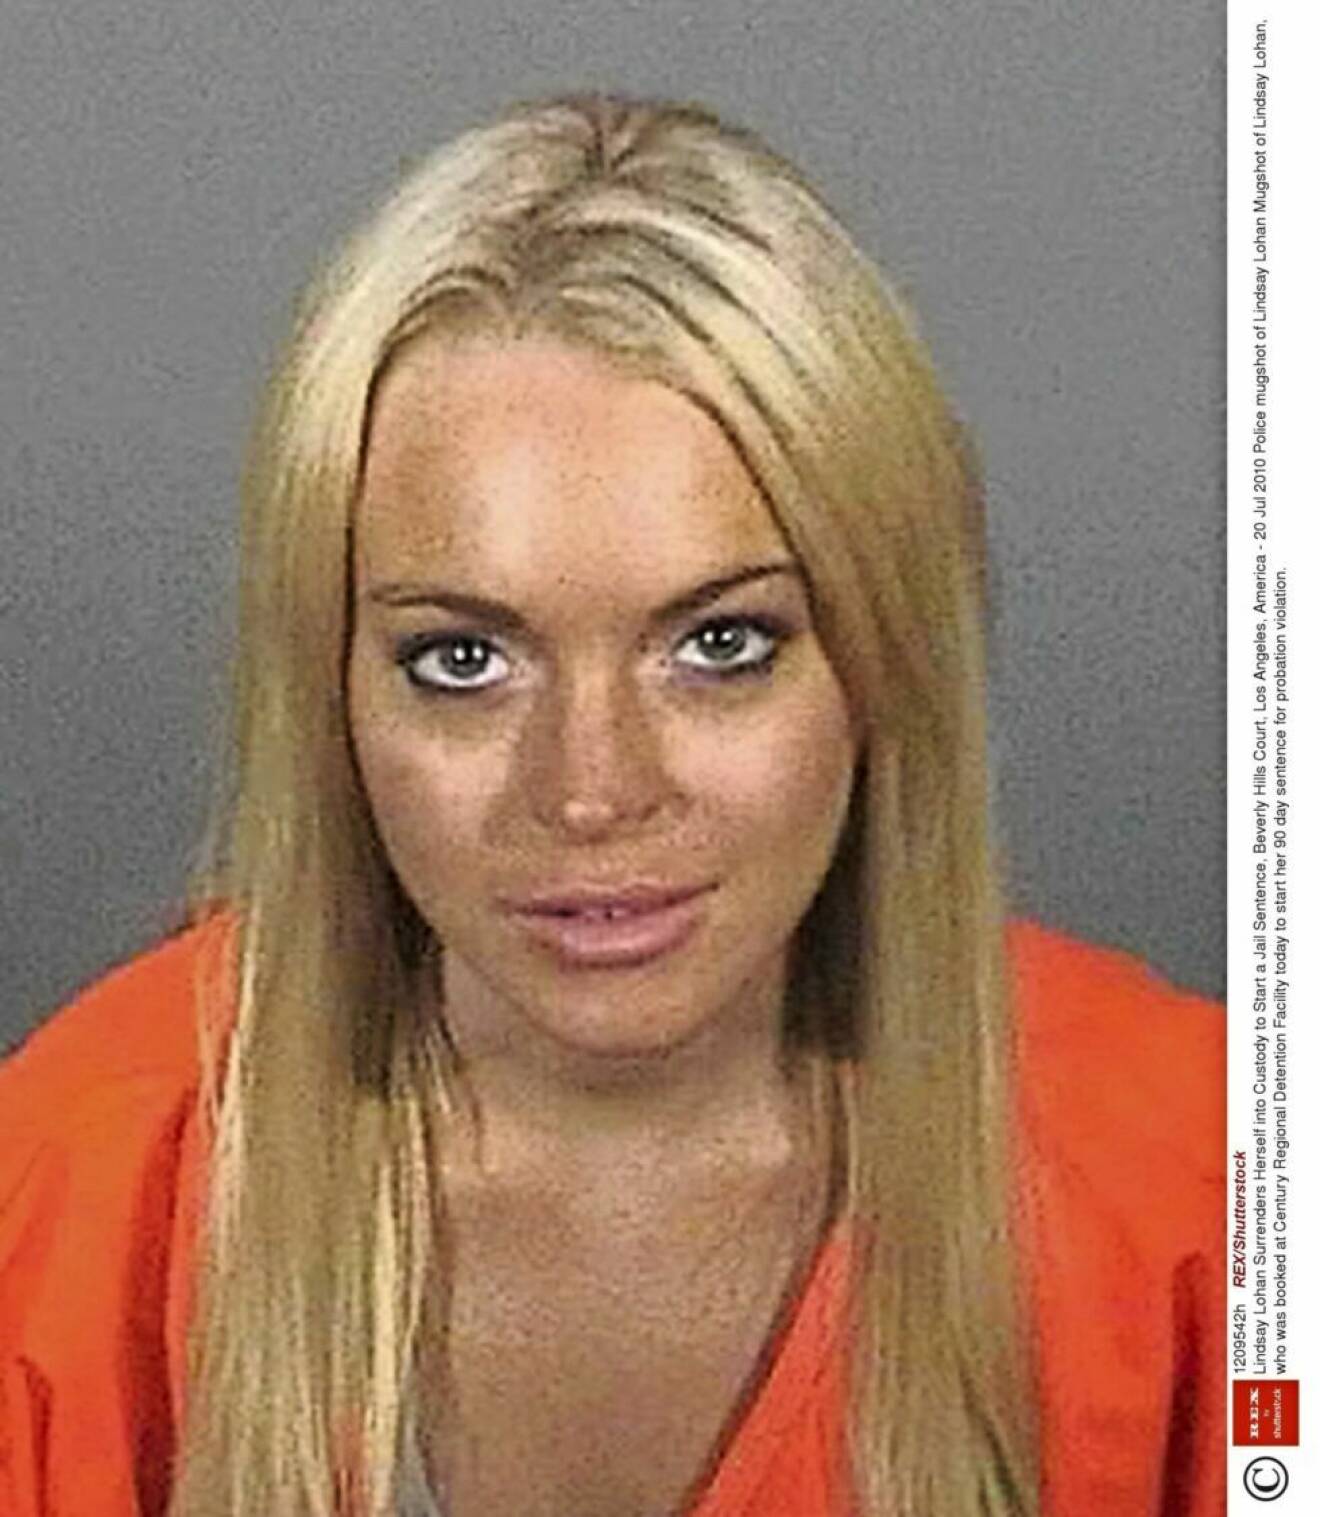 Lindsay Lohan. 